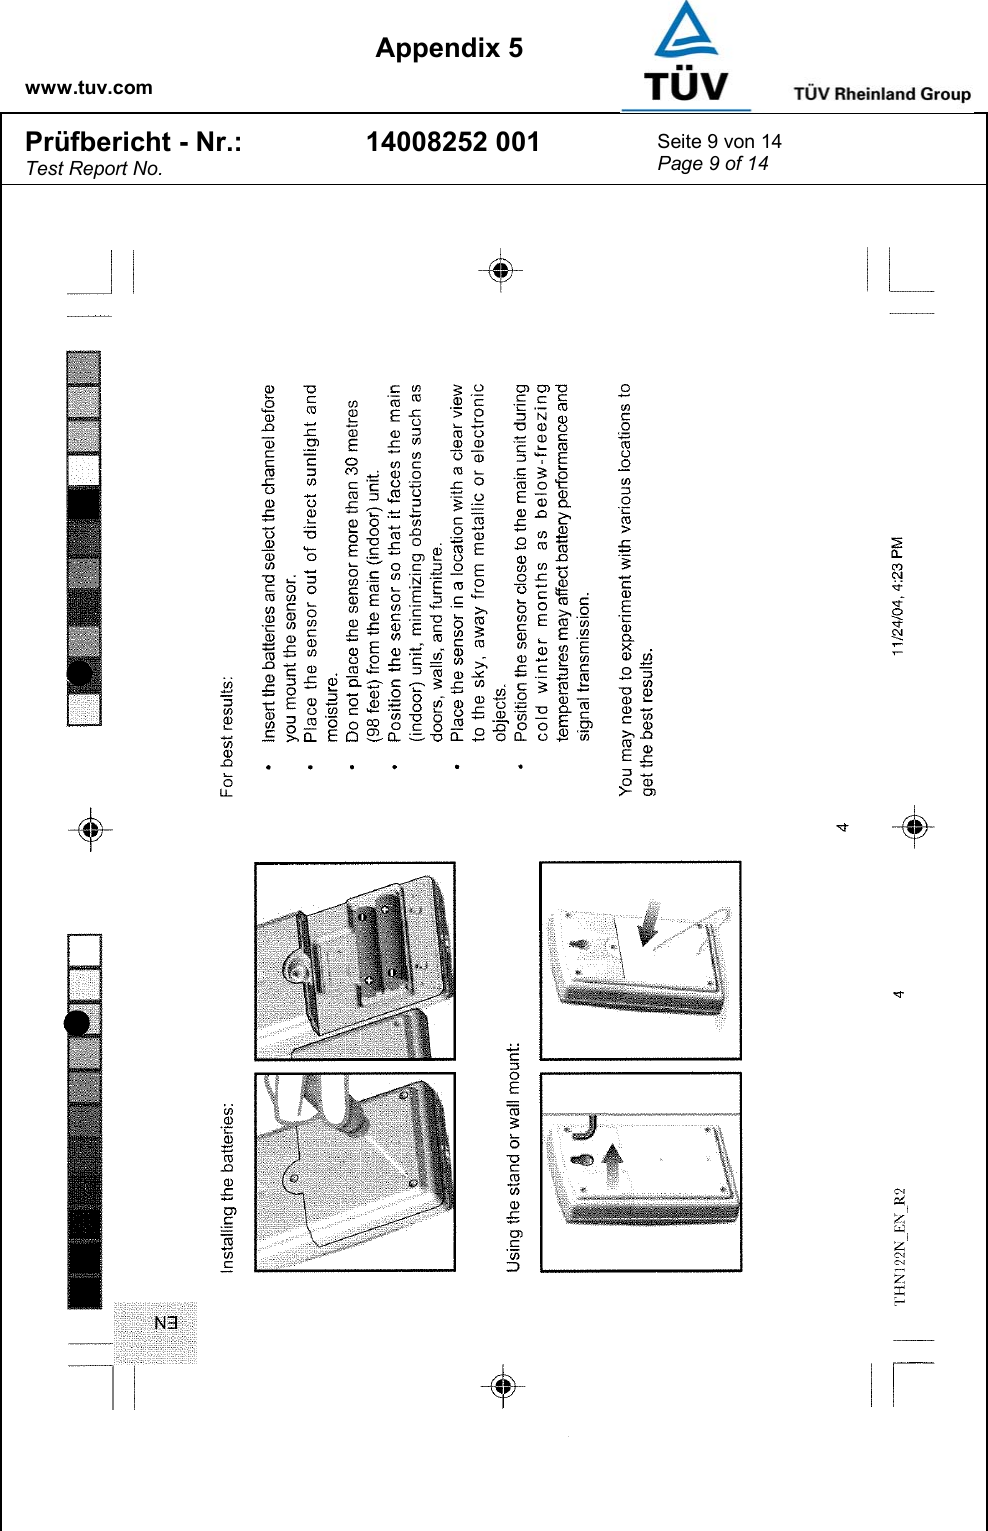    www.tuv.com  Appendix 5 Prüfbericht - Nr.: Test Report No. 14008252 001  Seite 9 von 14 Page 9 of 14   